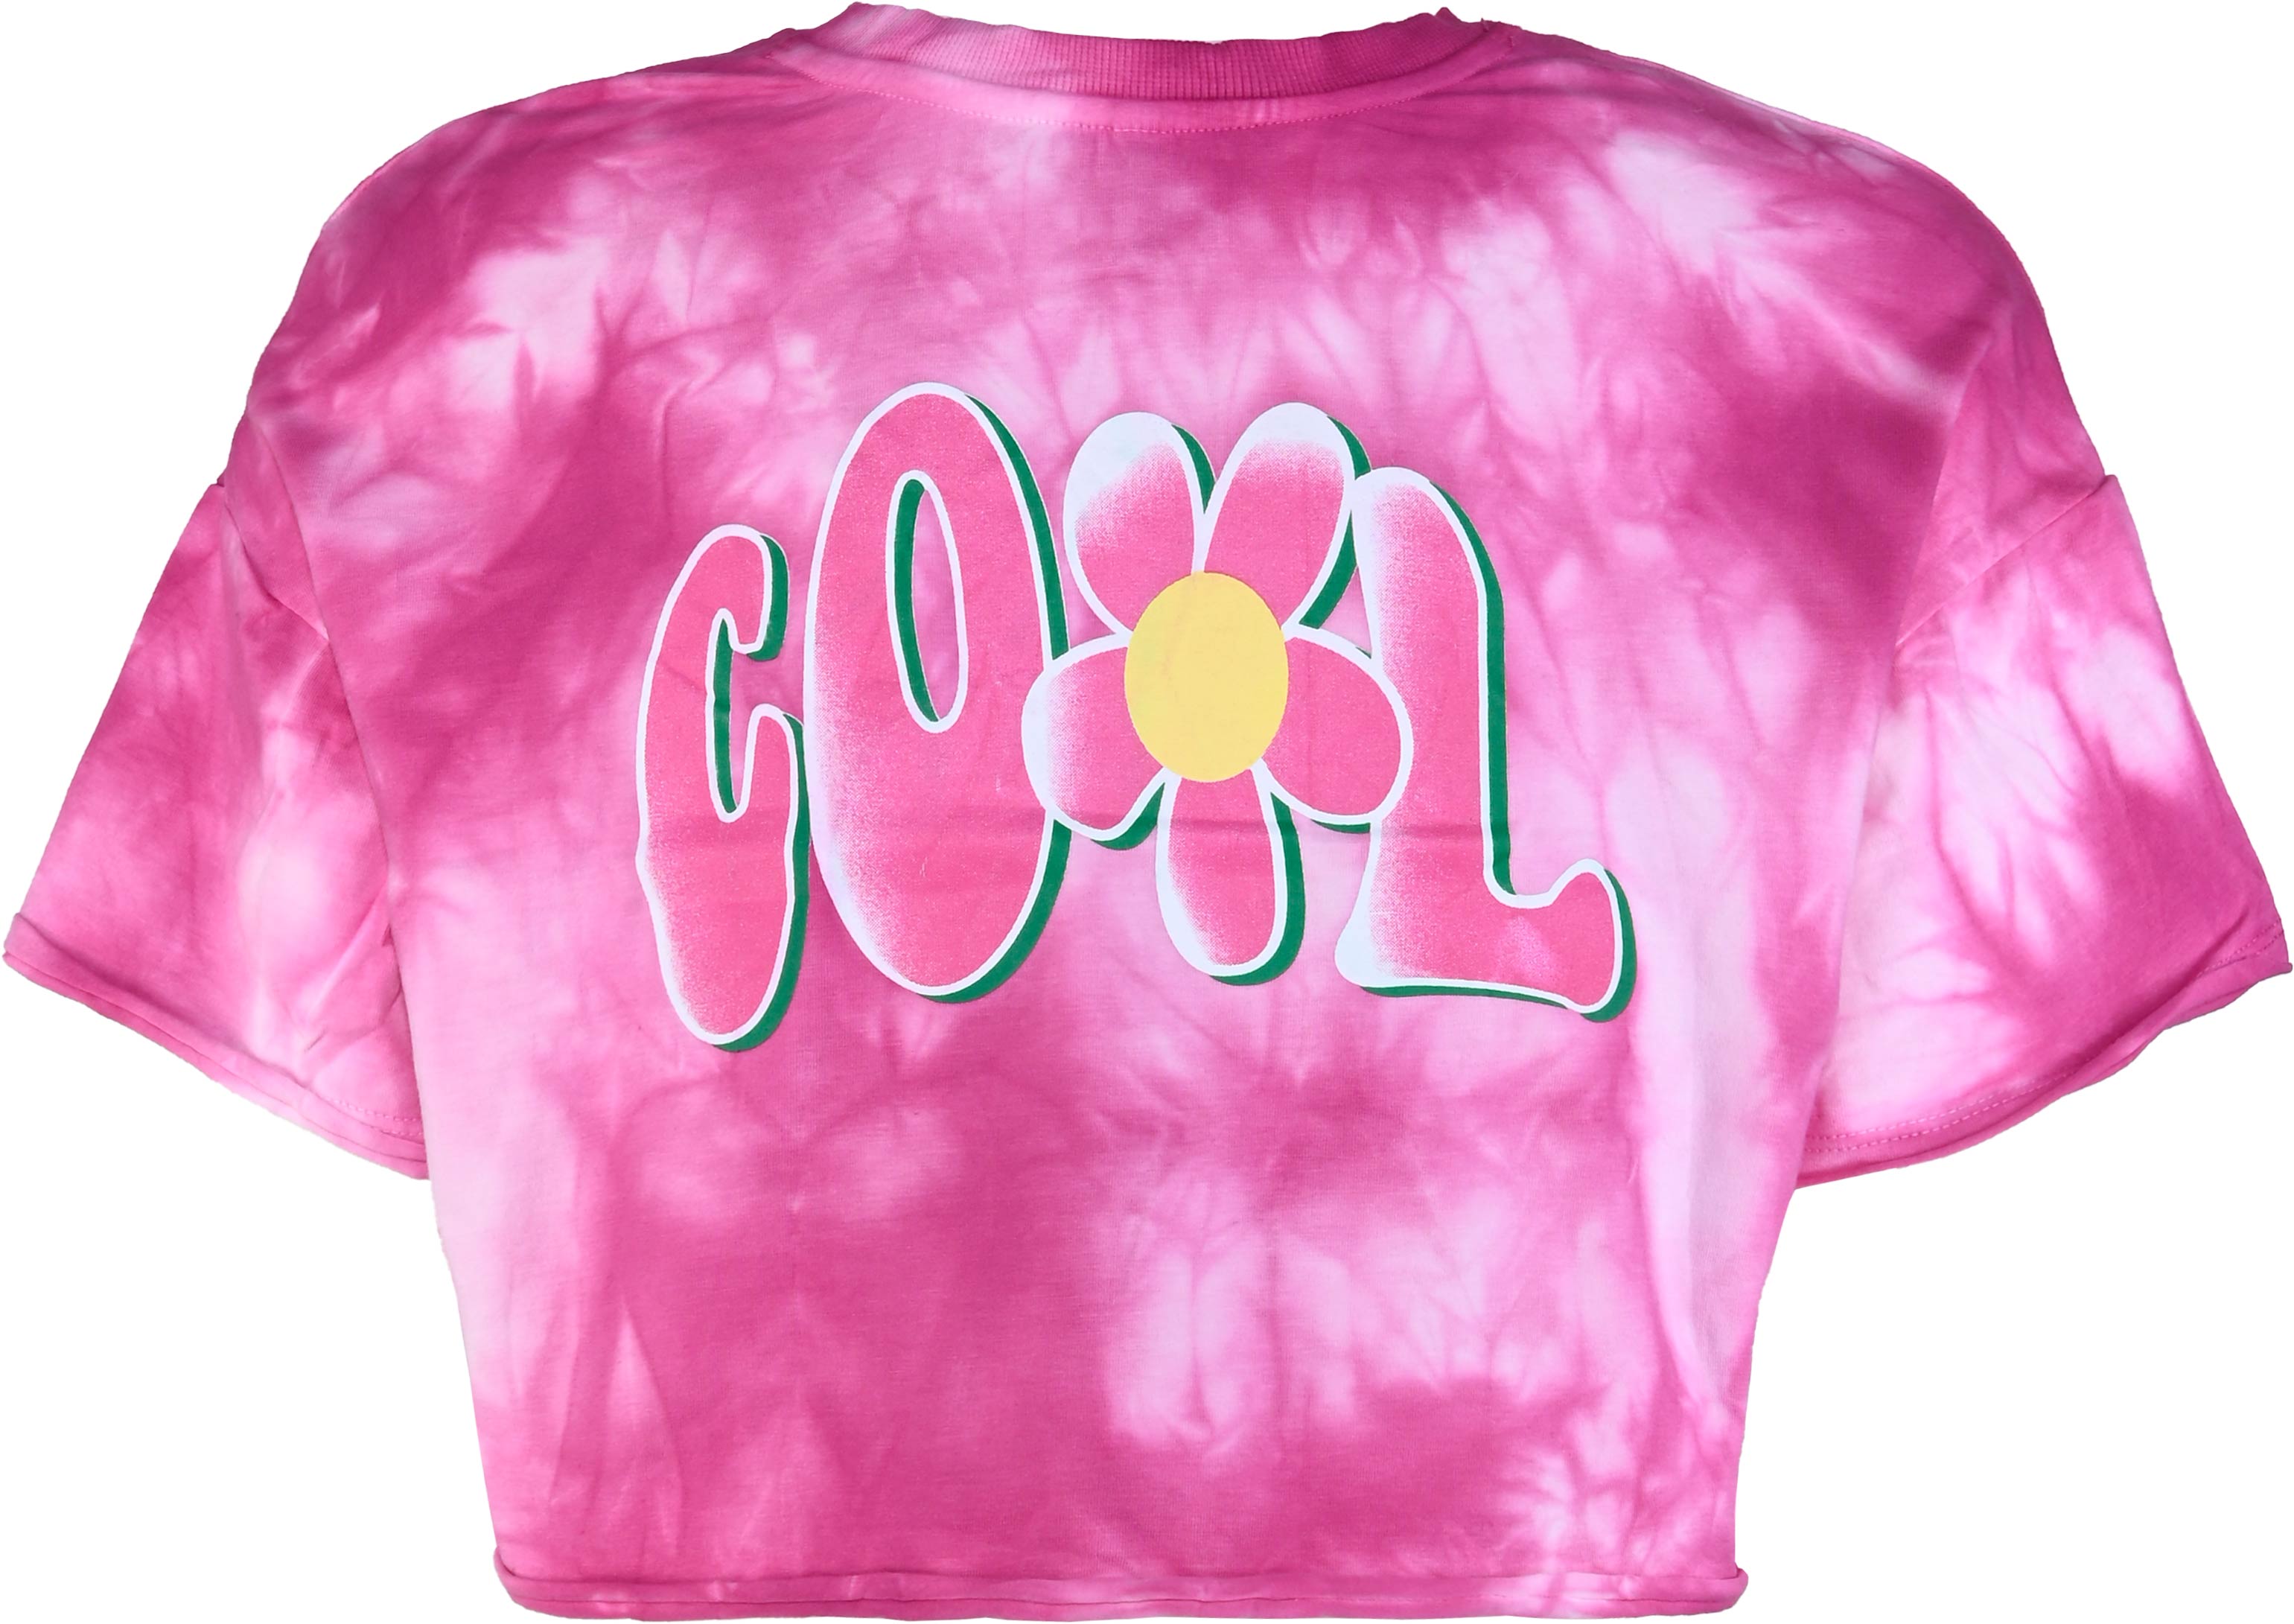 5845-Girls Boxy T-Shirt -Cool